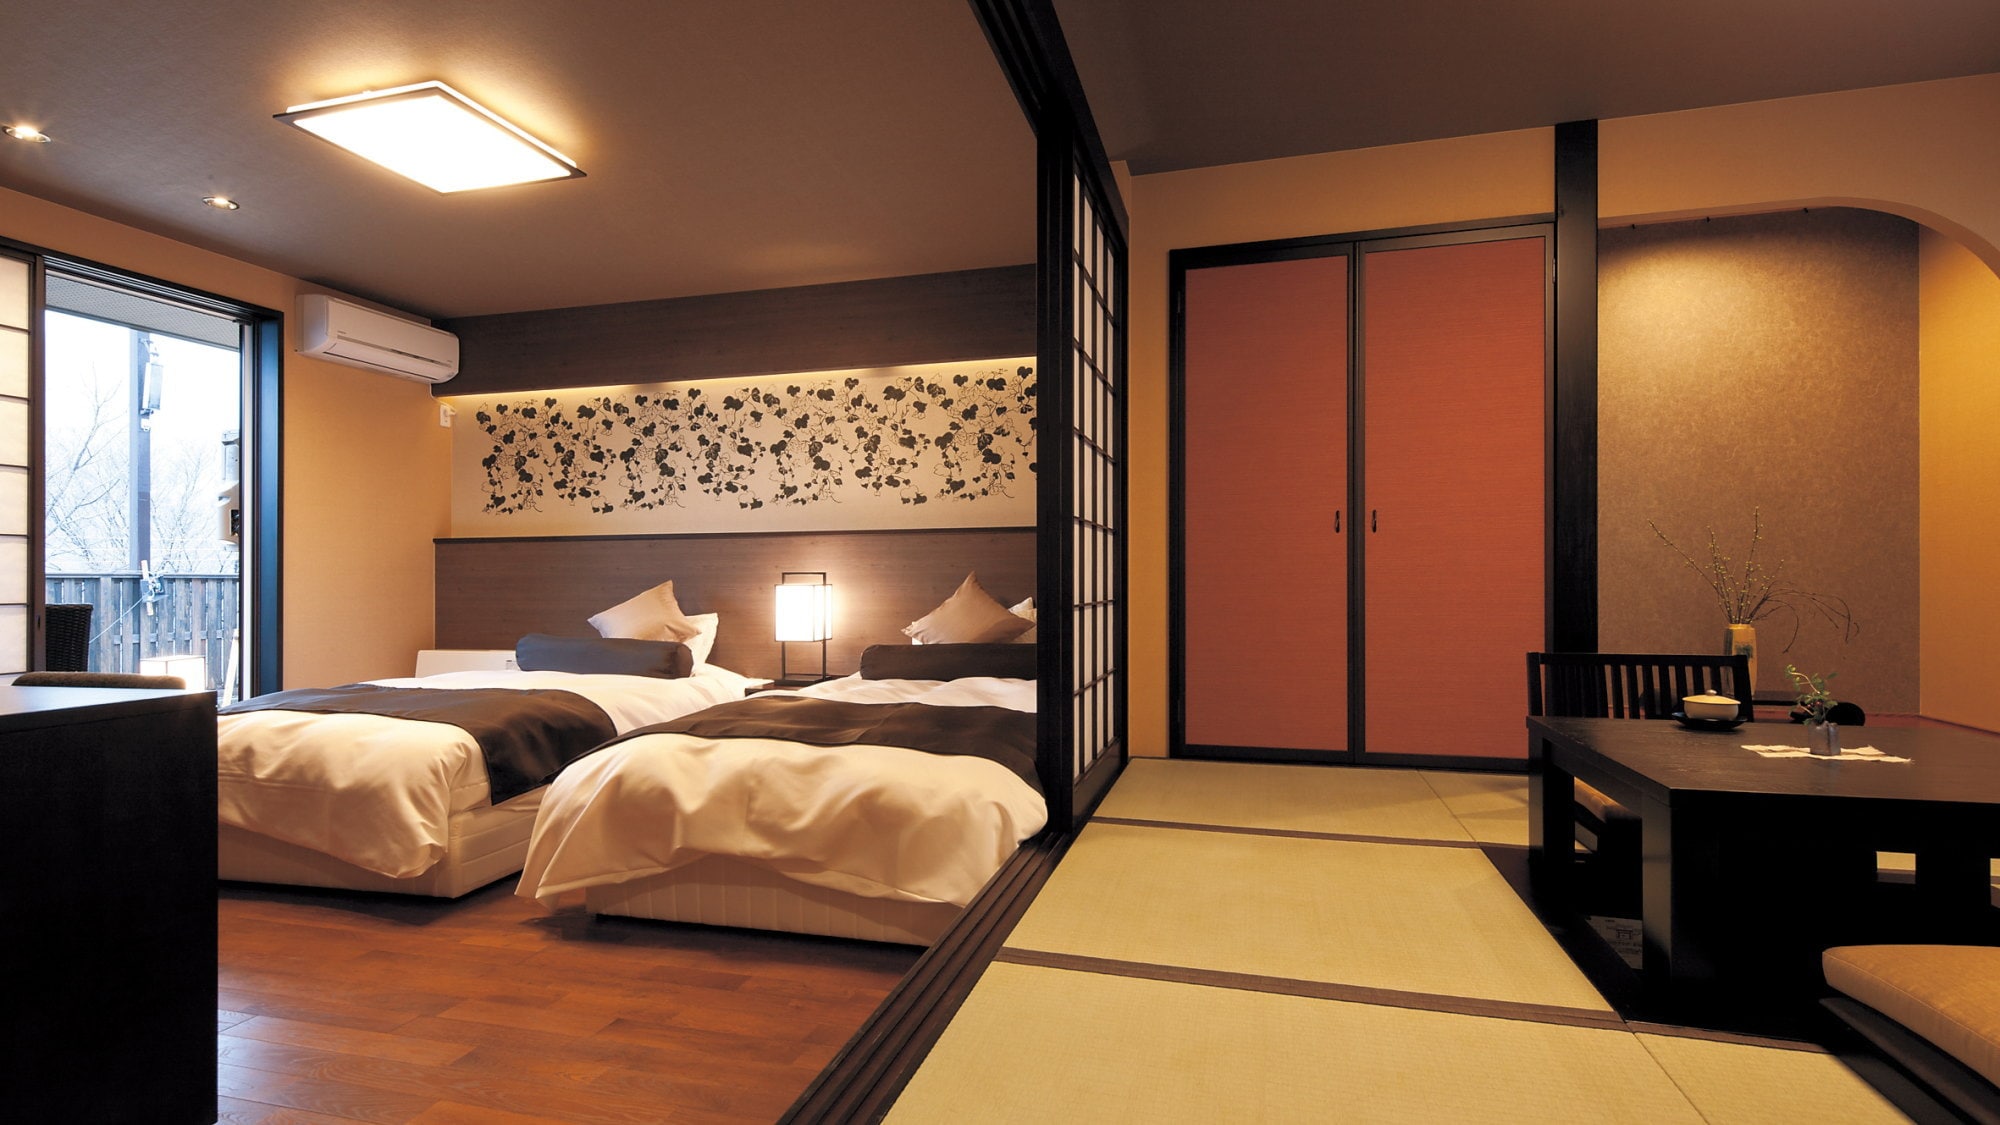 Silakan menikmati kamar yang bersebelahan dengan kamar bergaya Jepang dan bergaya Barat.